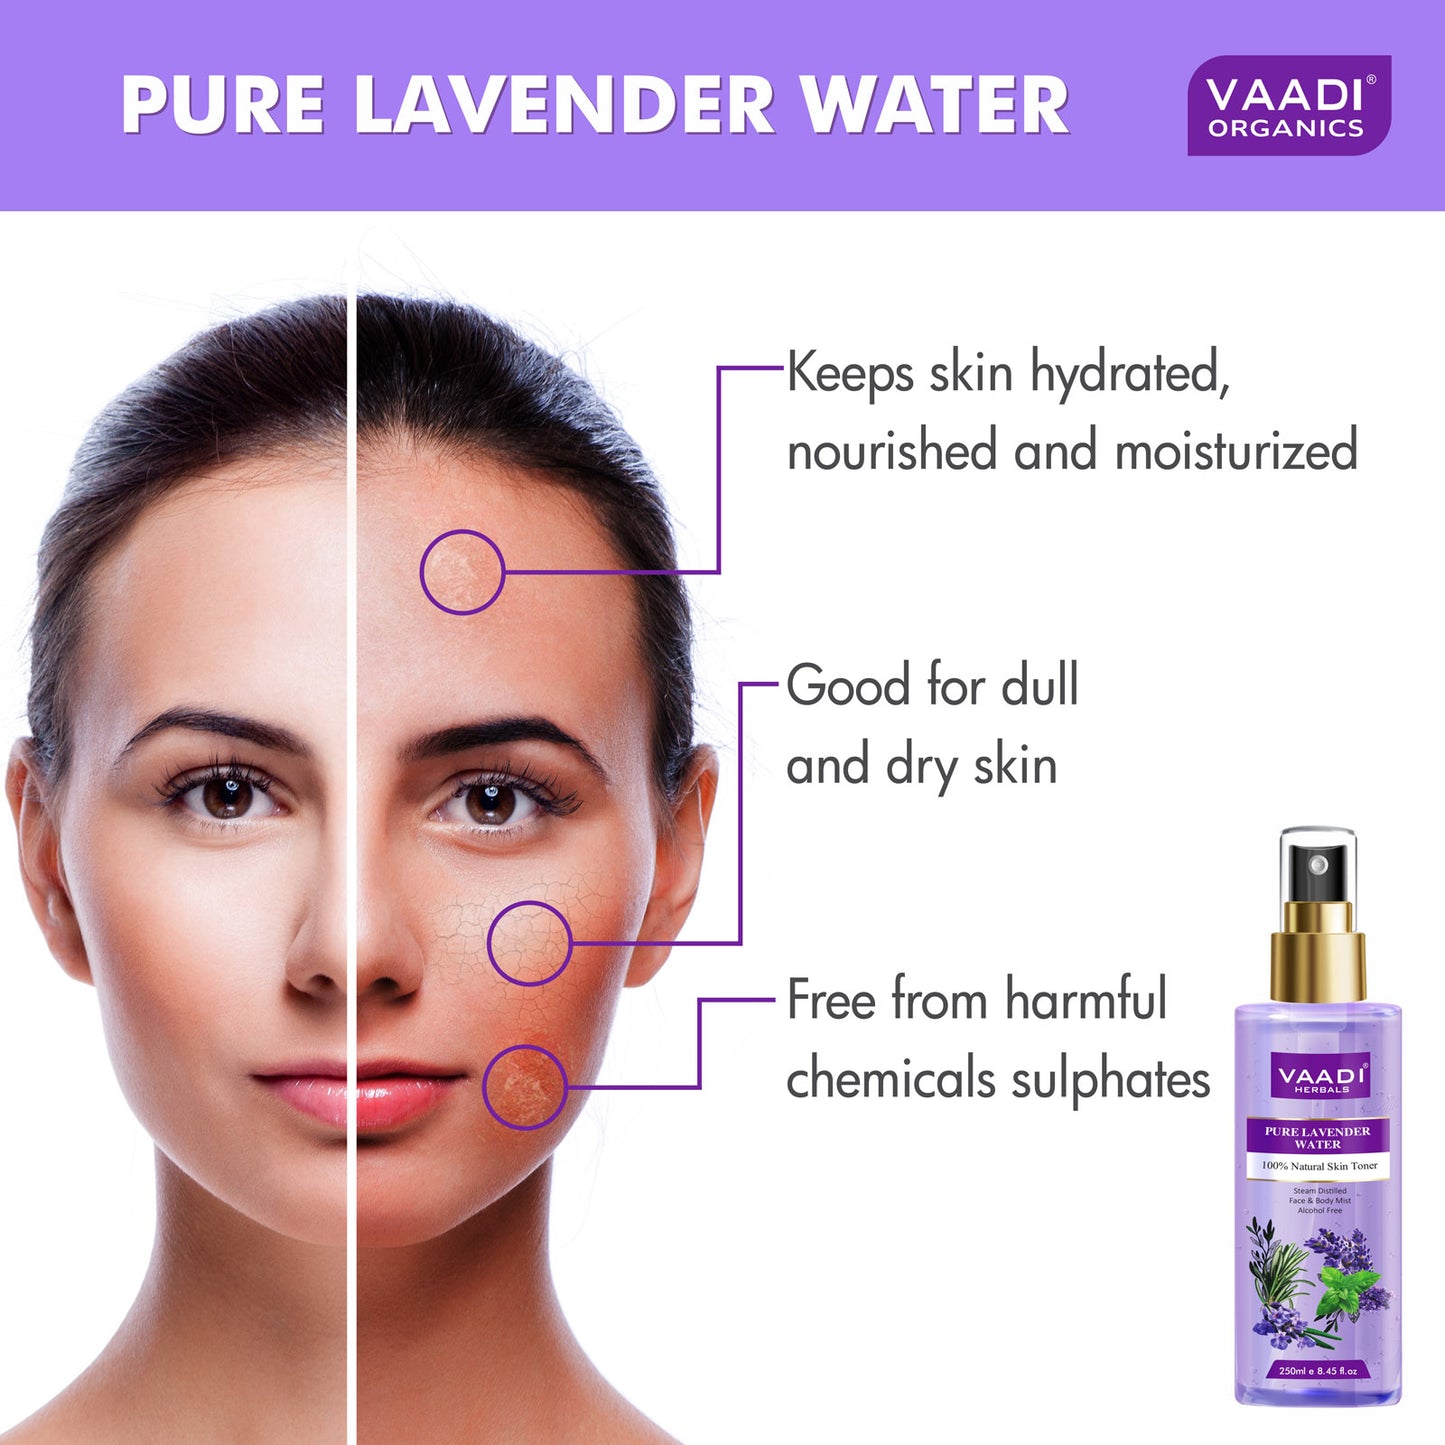 Lavender Water -100% Natural & Pure Skin Toner (250 ml)